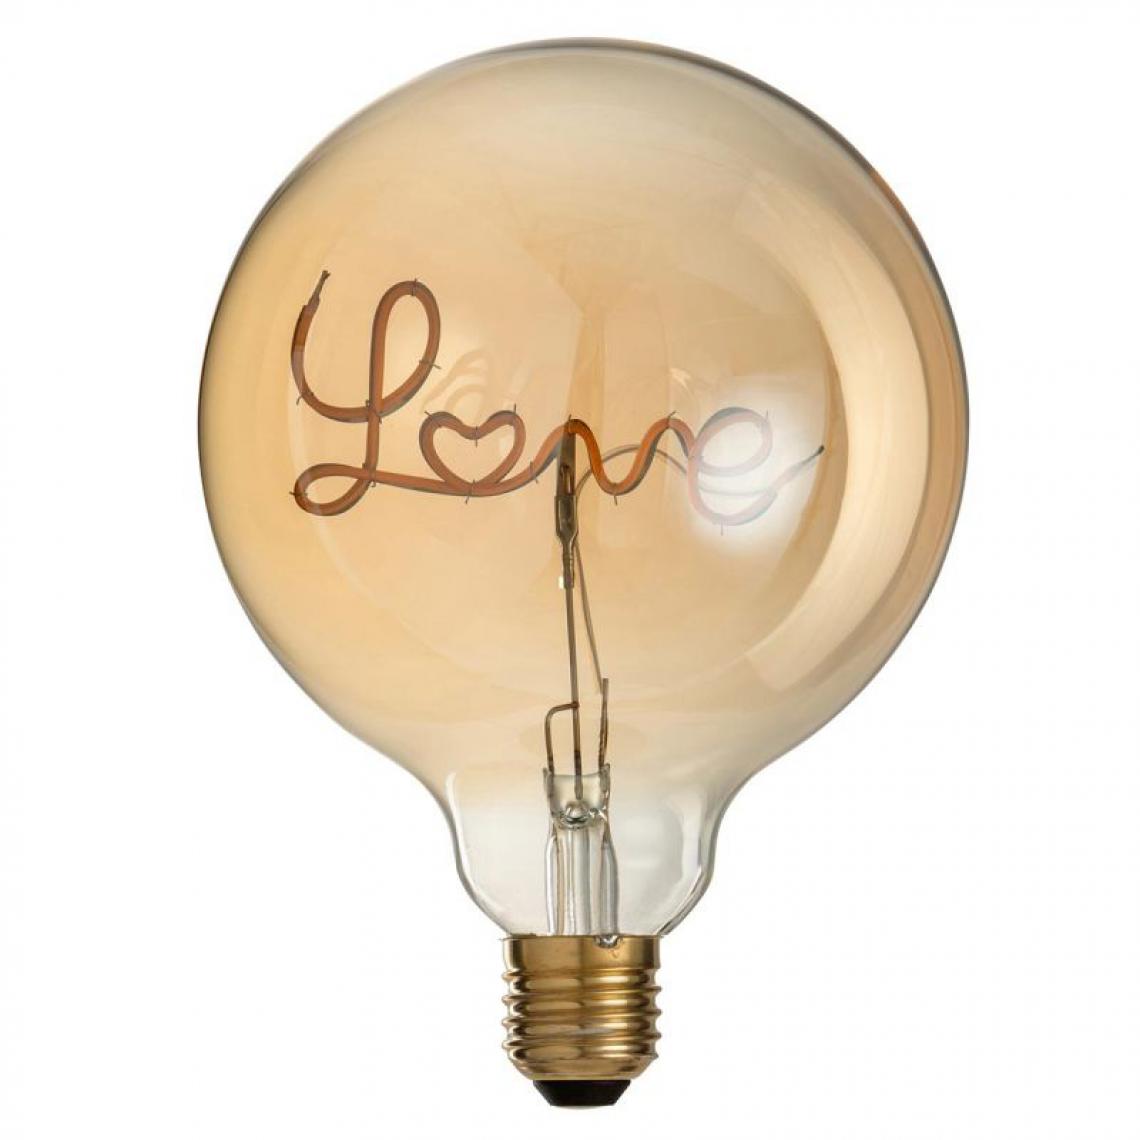 Paris Prix - Ampoule à Led Design Love 17cm Jaune & Or - Ampoules LED